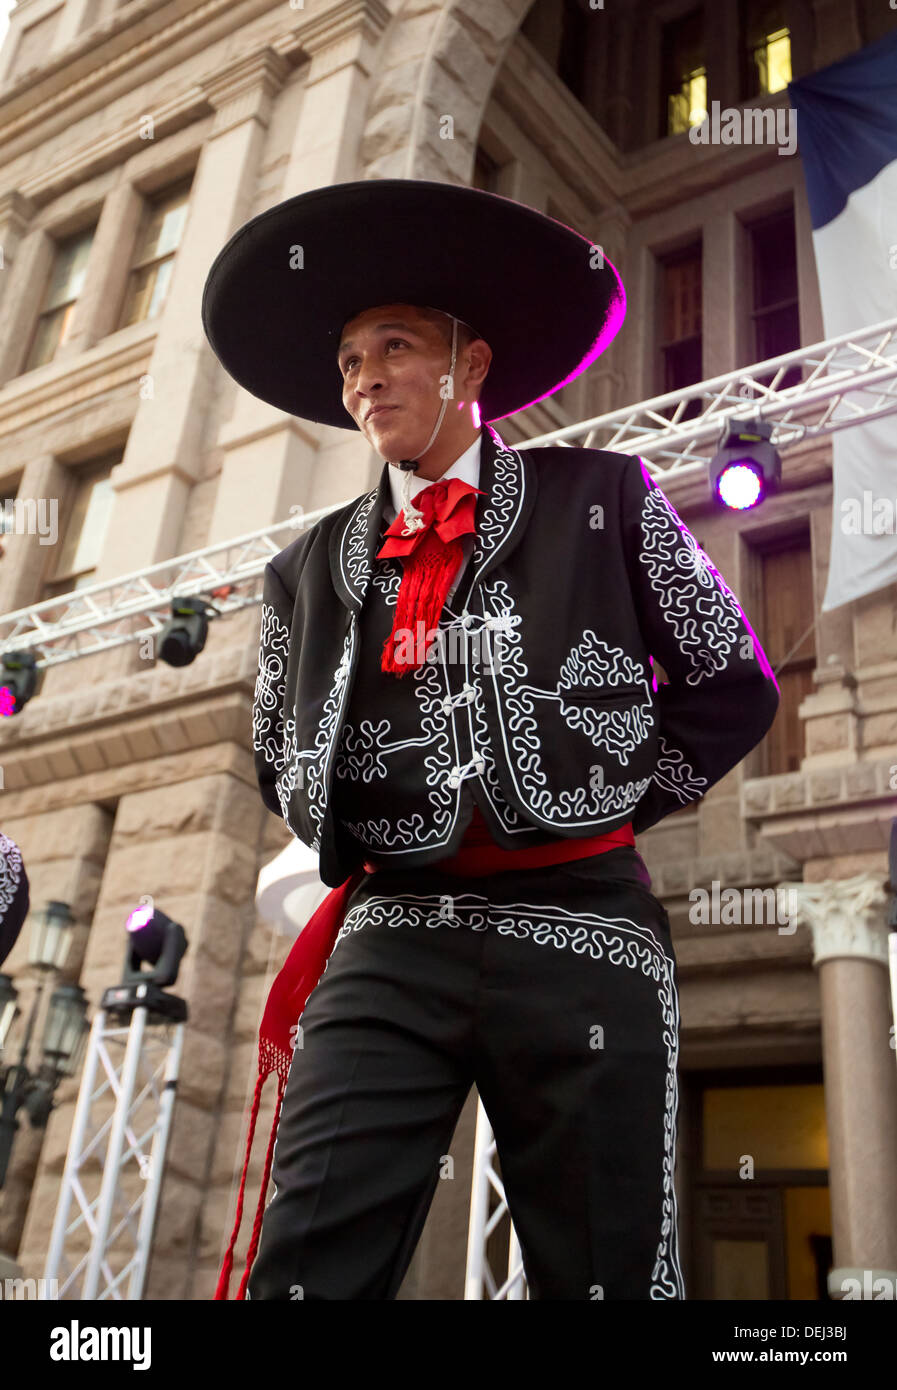 Celebración del Día de la independencia mexicana en el Capitolio de Texas, edificio incluye hombre hispano, vestido como un Charro bailes tradicionales Foto de stock